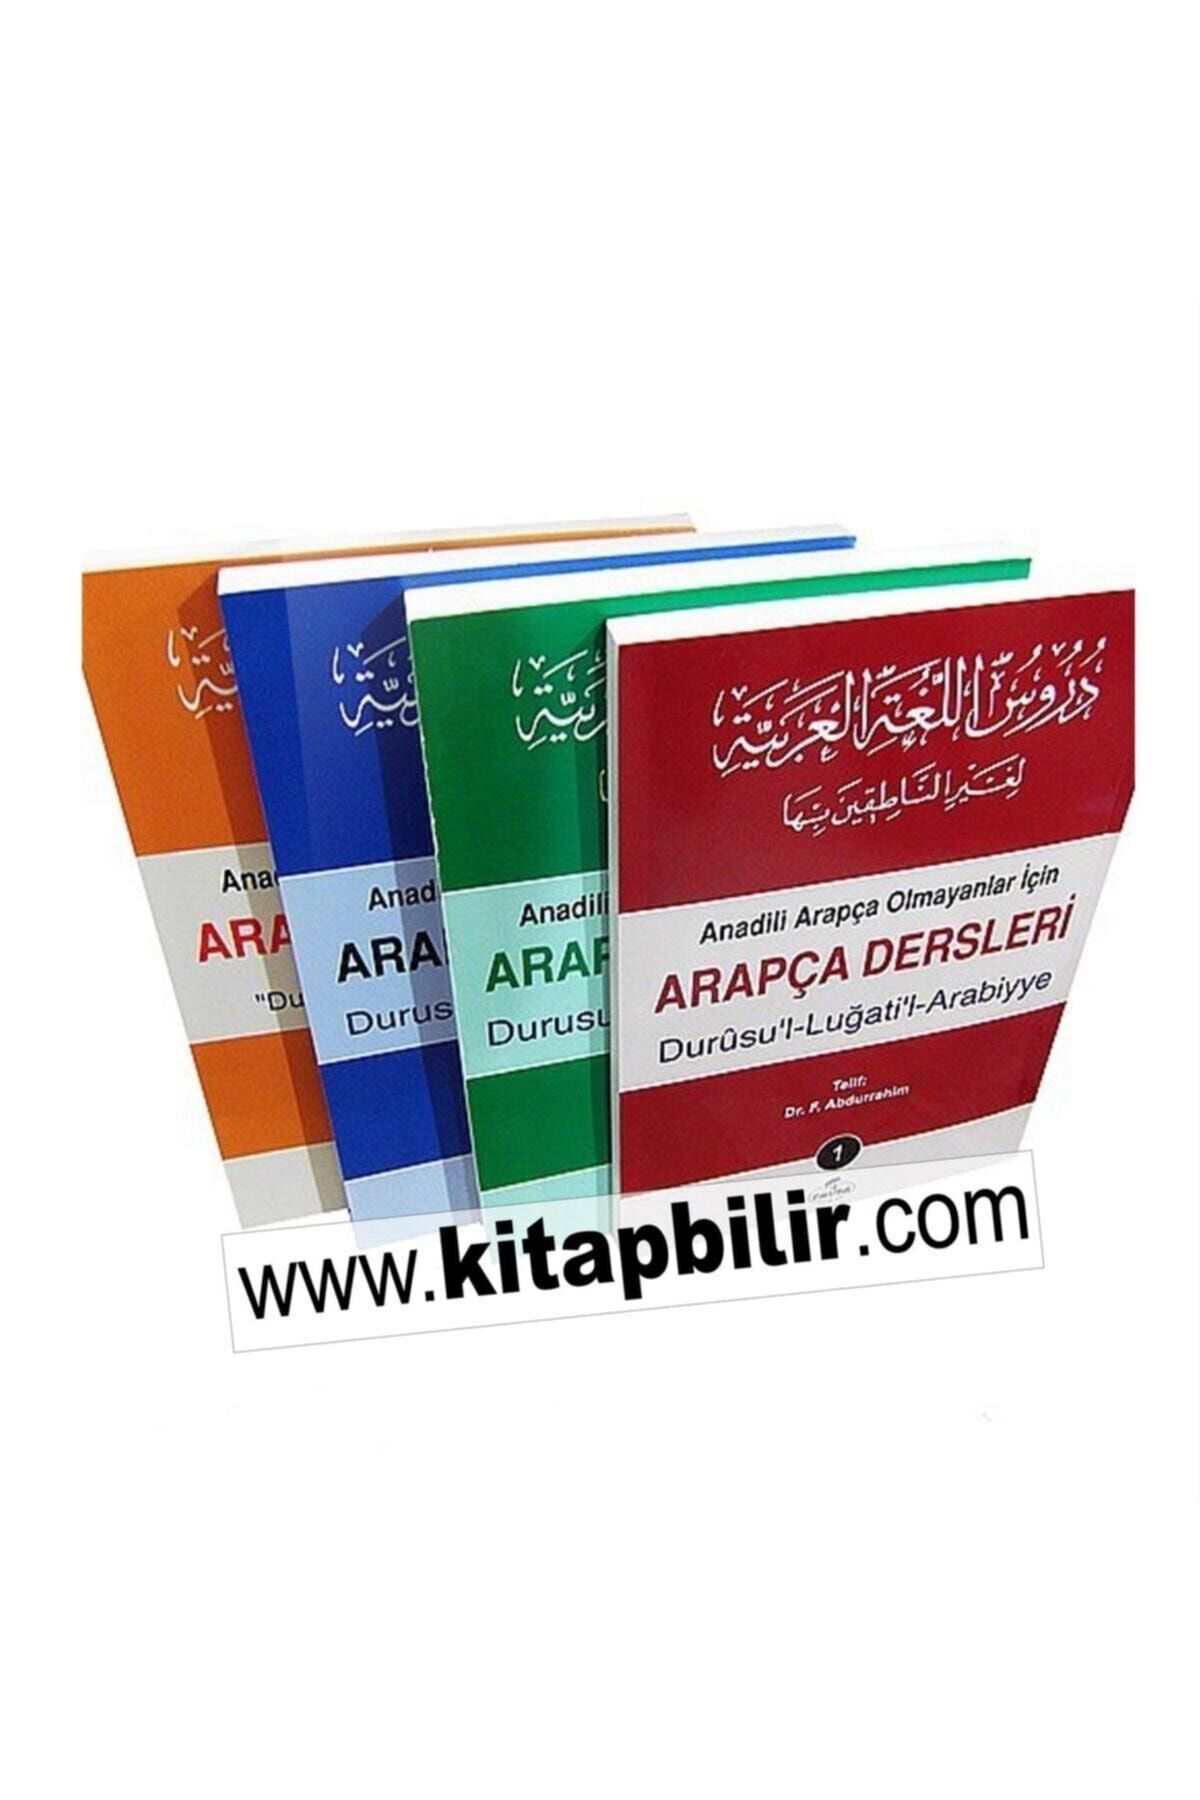 Ravza Yayınları Durusul Lügatil Arabiyye "arapça Dersleri" (4 Cilt Takım)